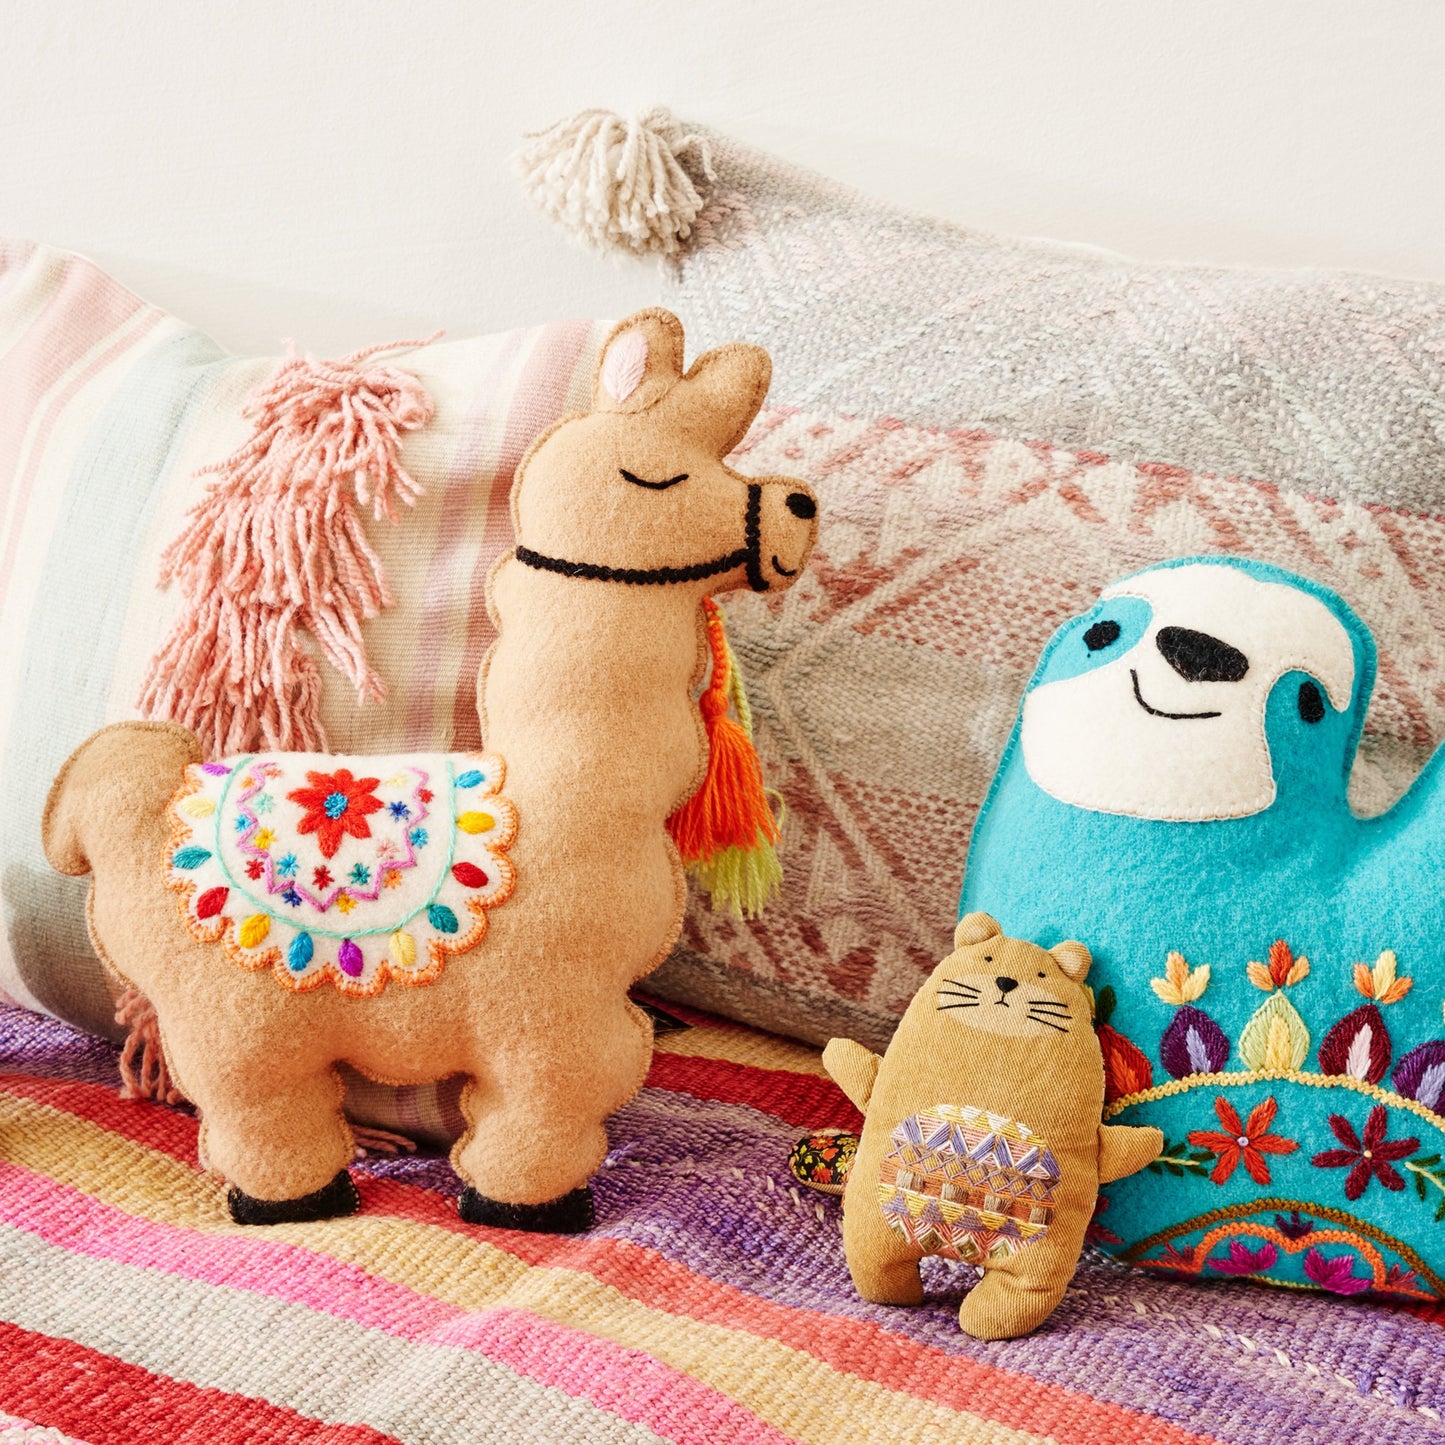 Bett mit farbiger Decke und Kissen und Stofftieren, Lama, Faultier und Fischotter